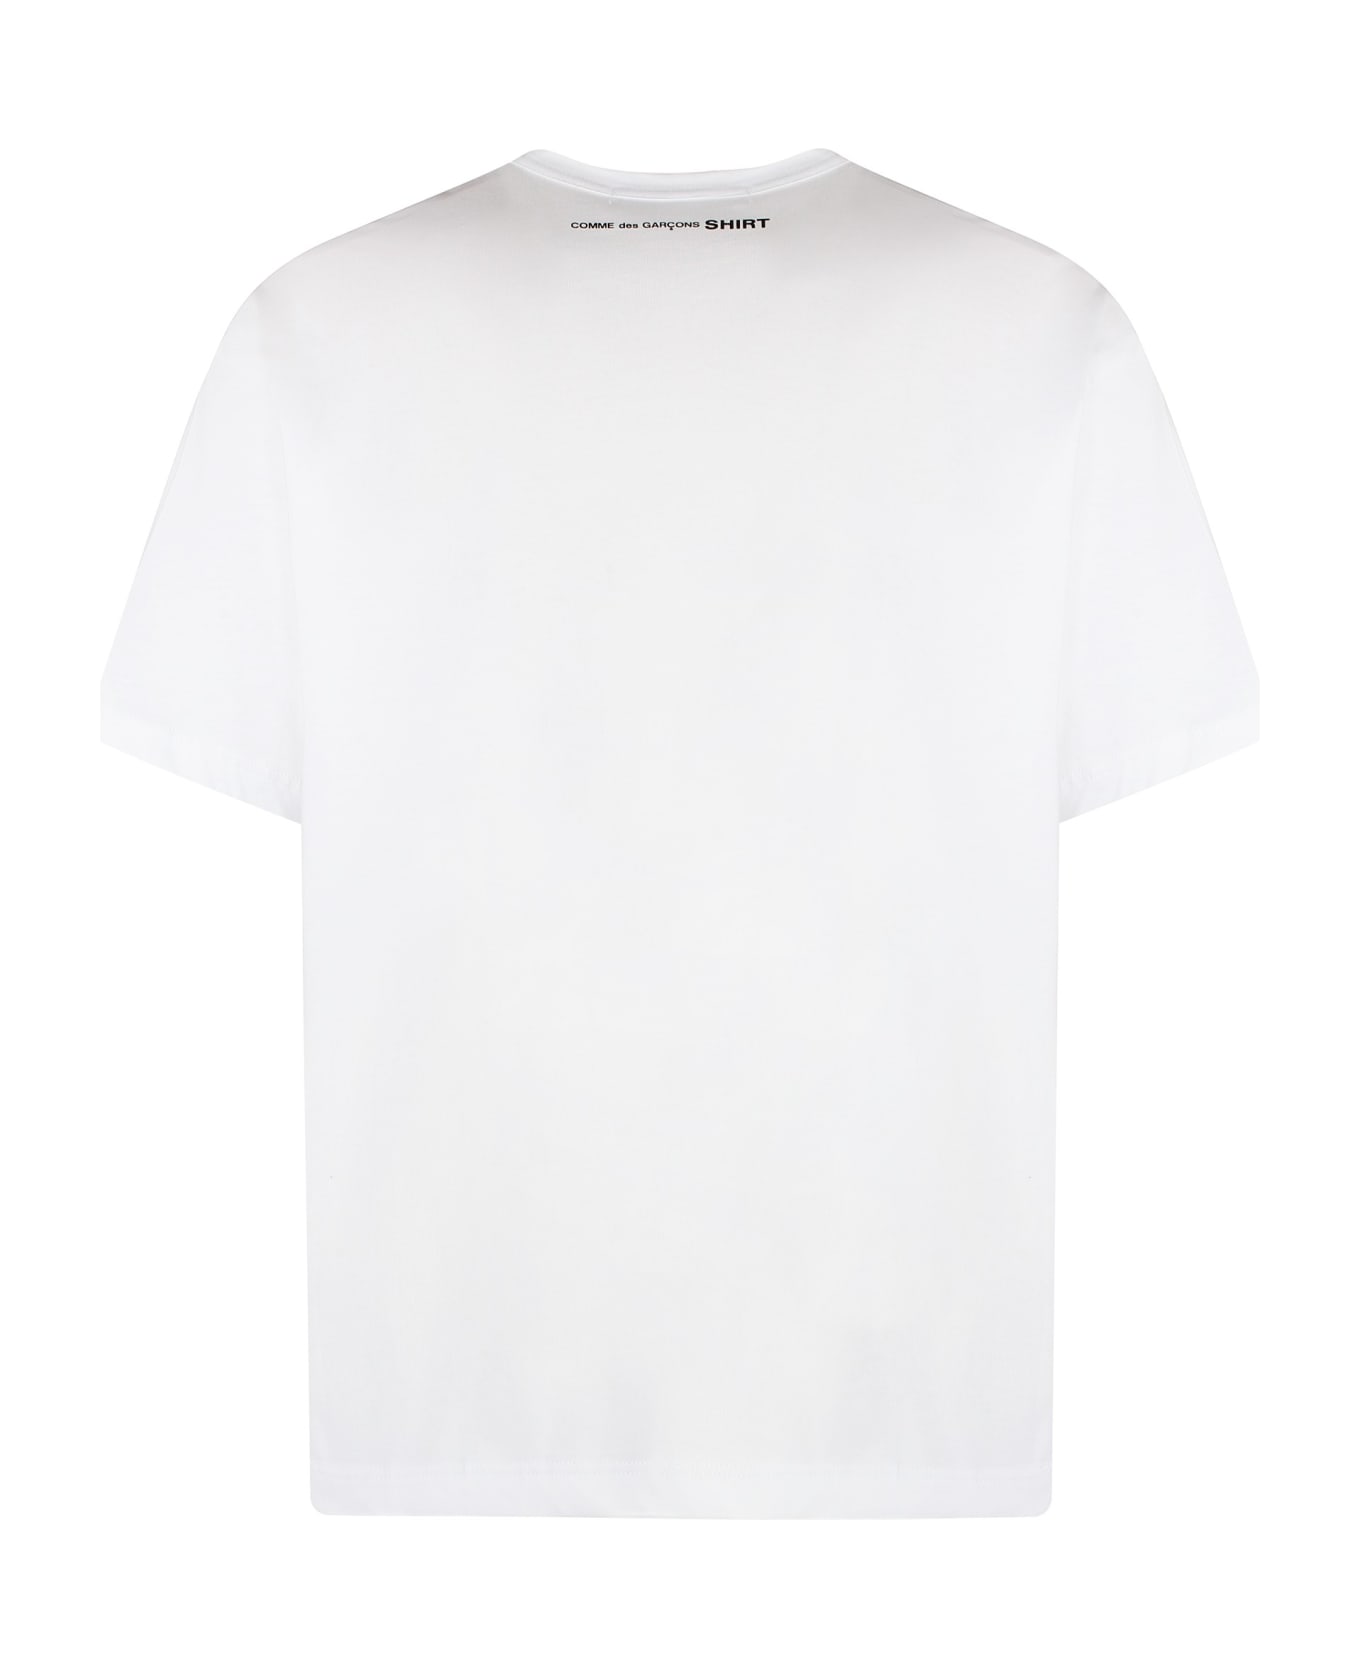 Comme des Garçons Shirt Cotton Crew-neck T-shirt - White